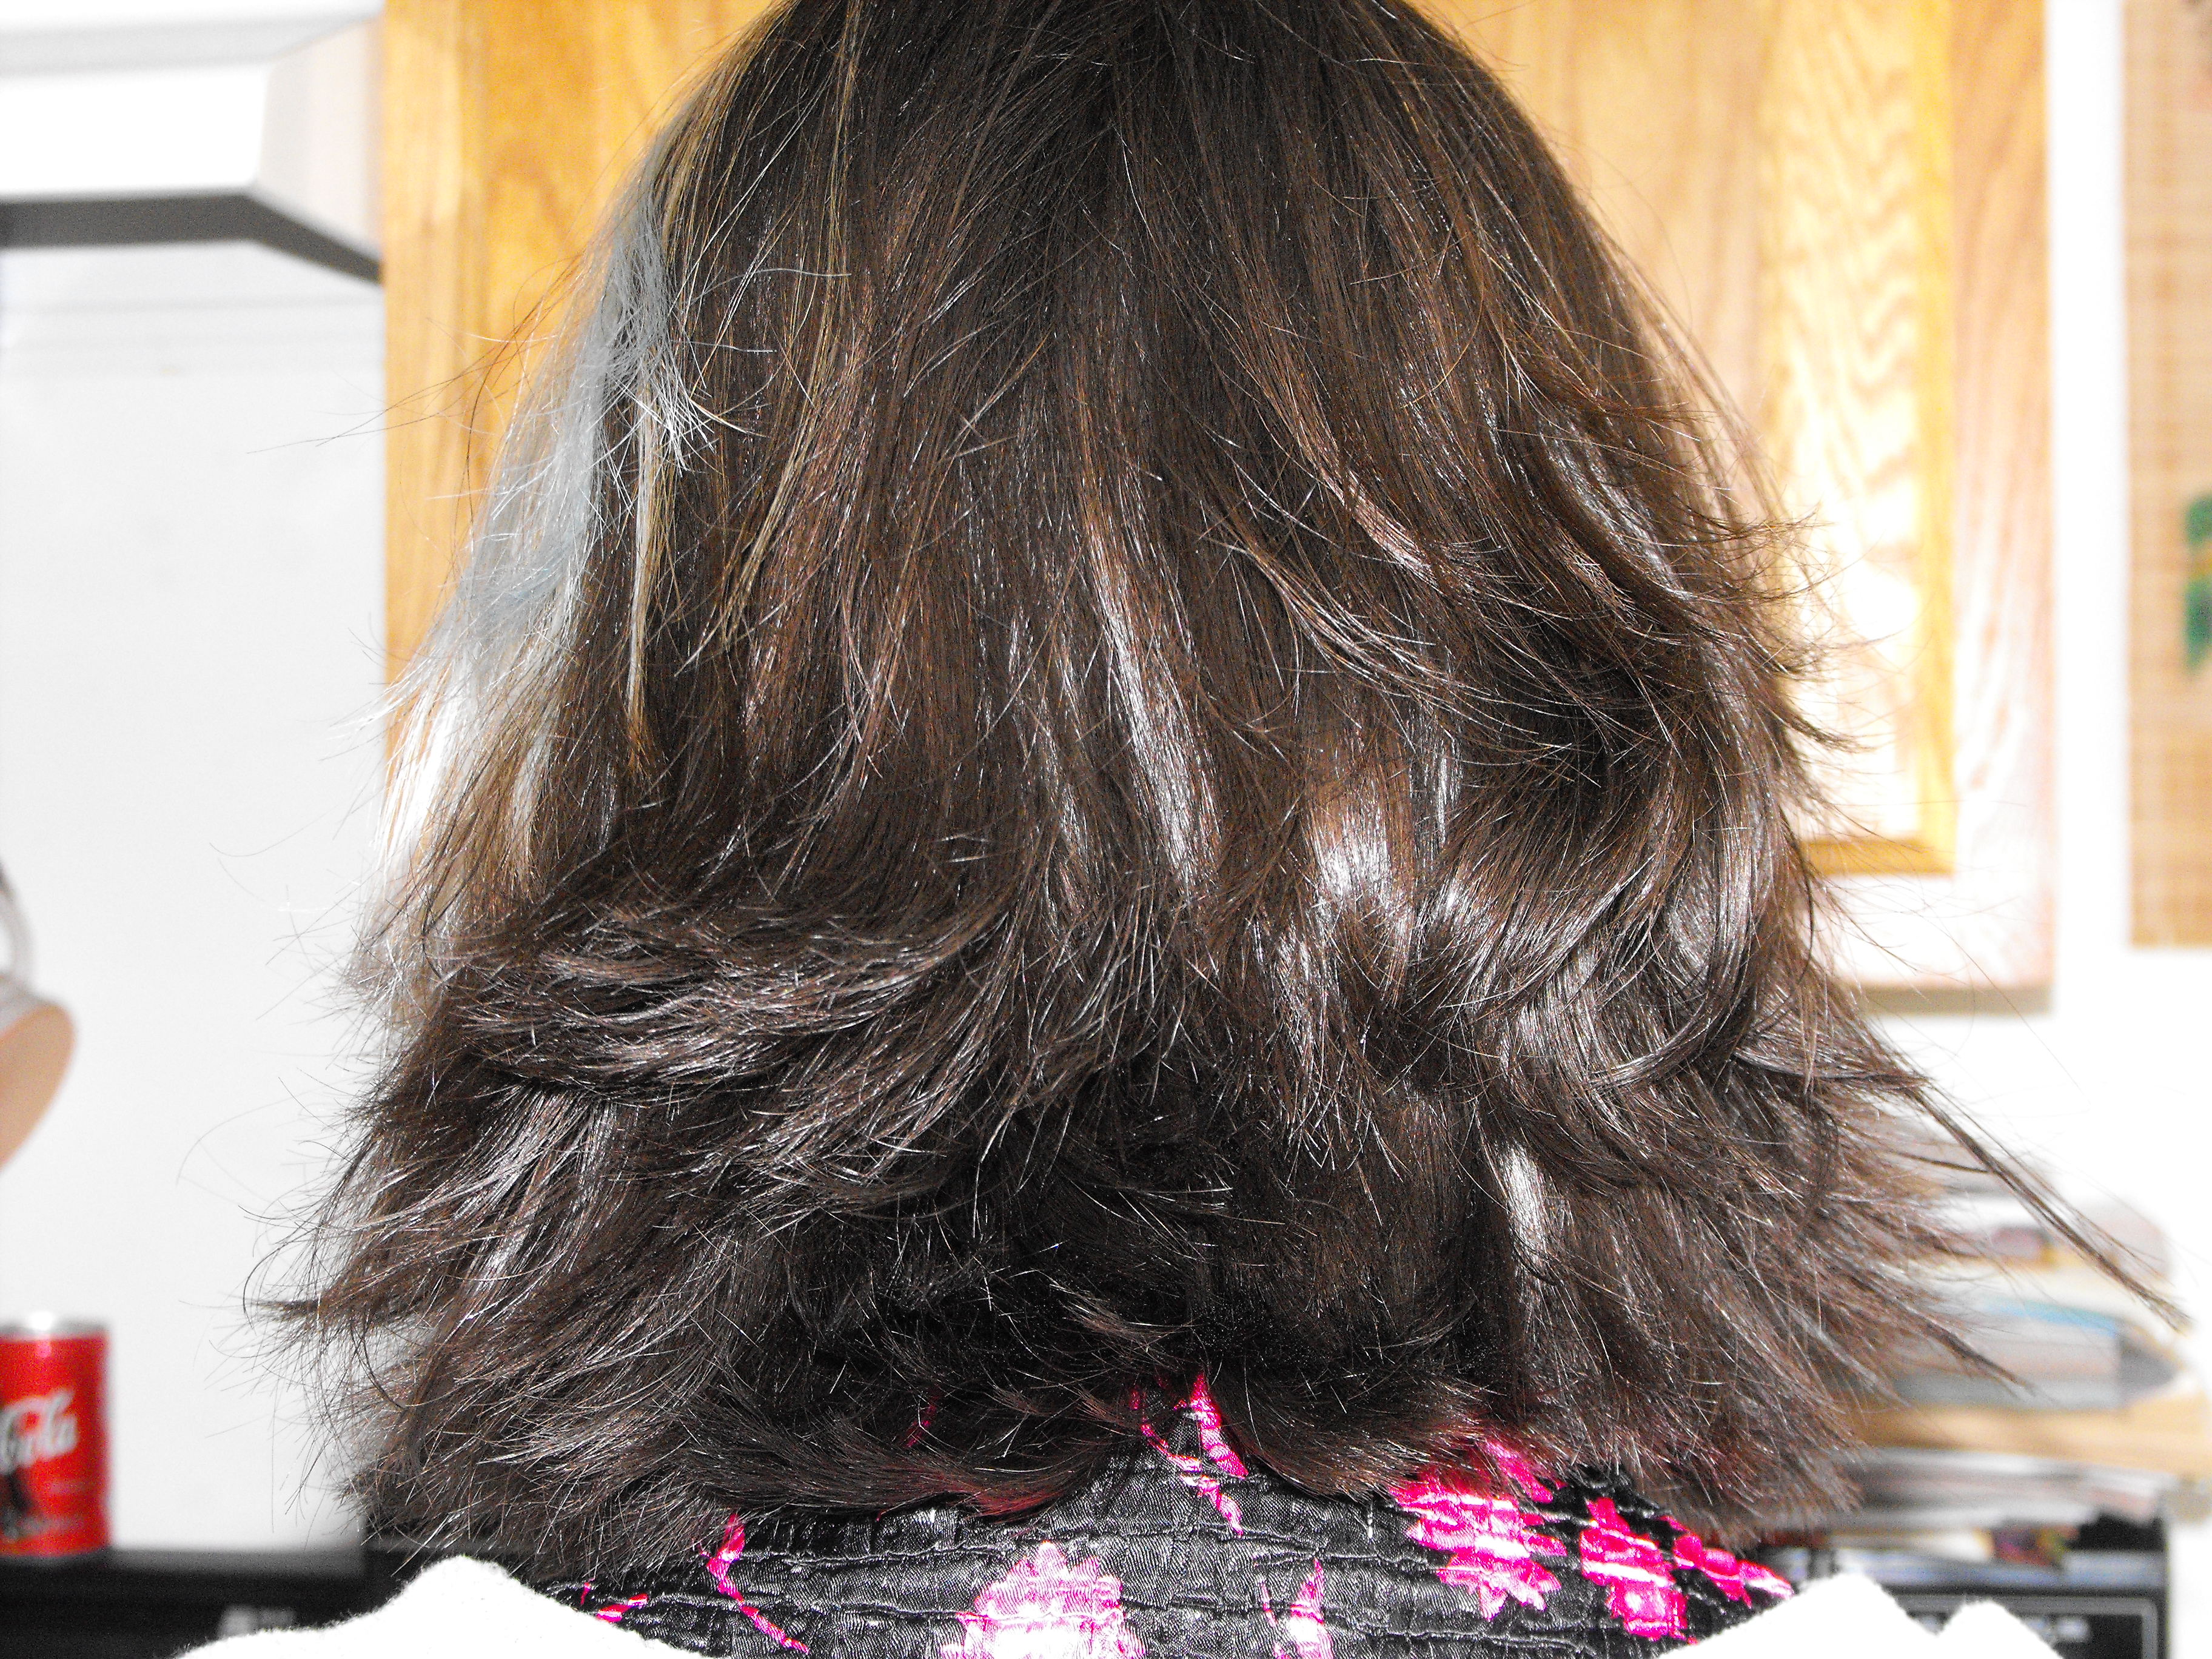 ./2009/Carina's Haircut/Carinas haircut0006.JPG